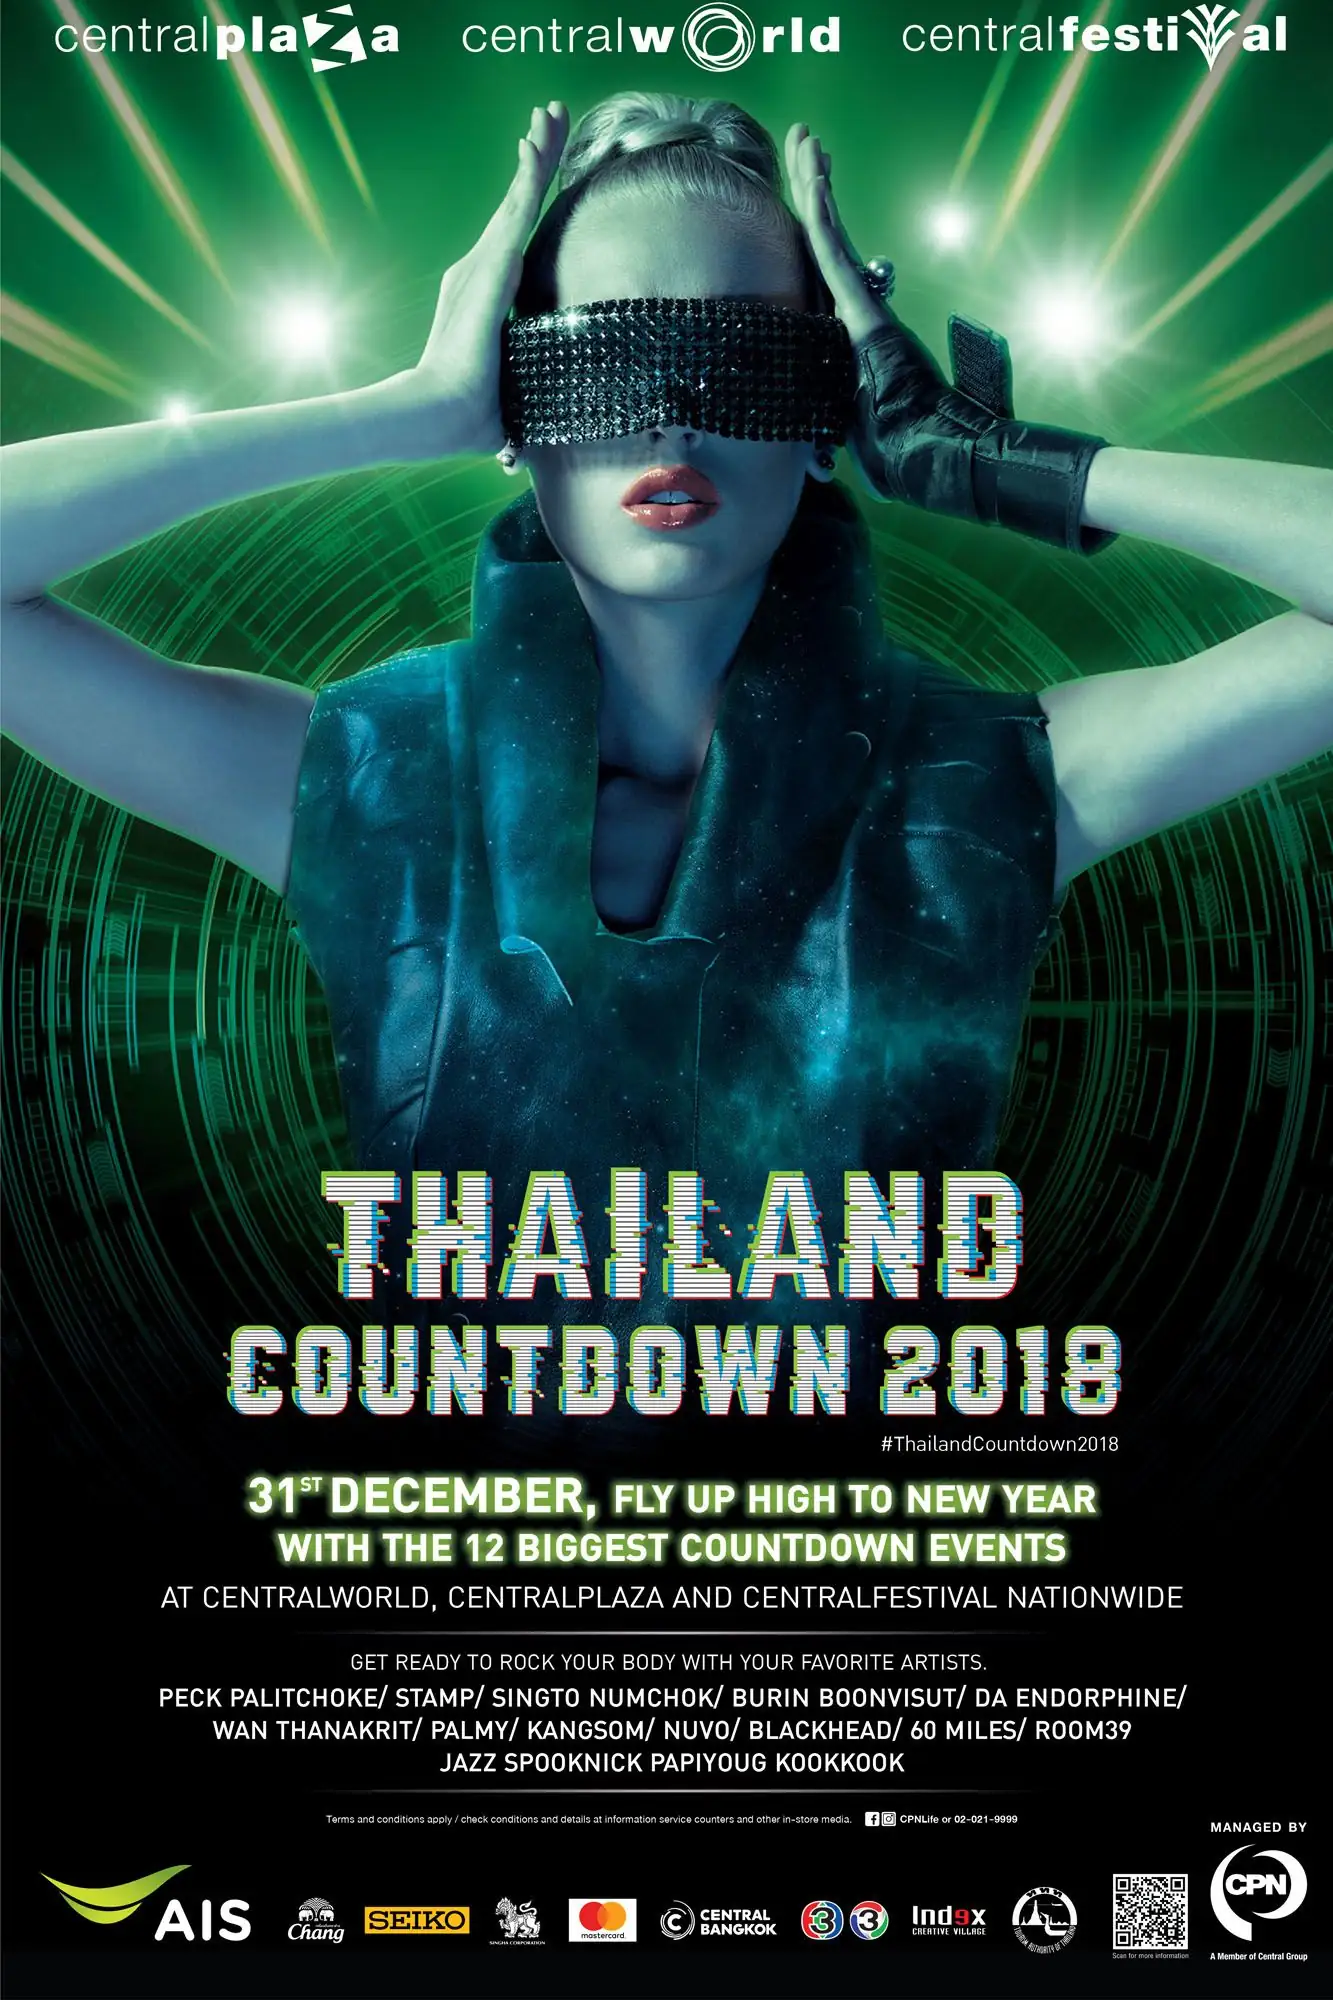 ais-bangkok-thailand-countdown-2018